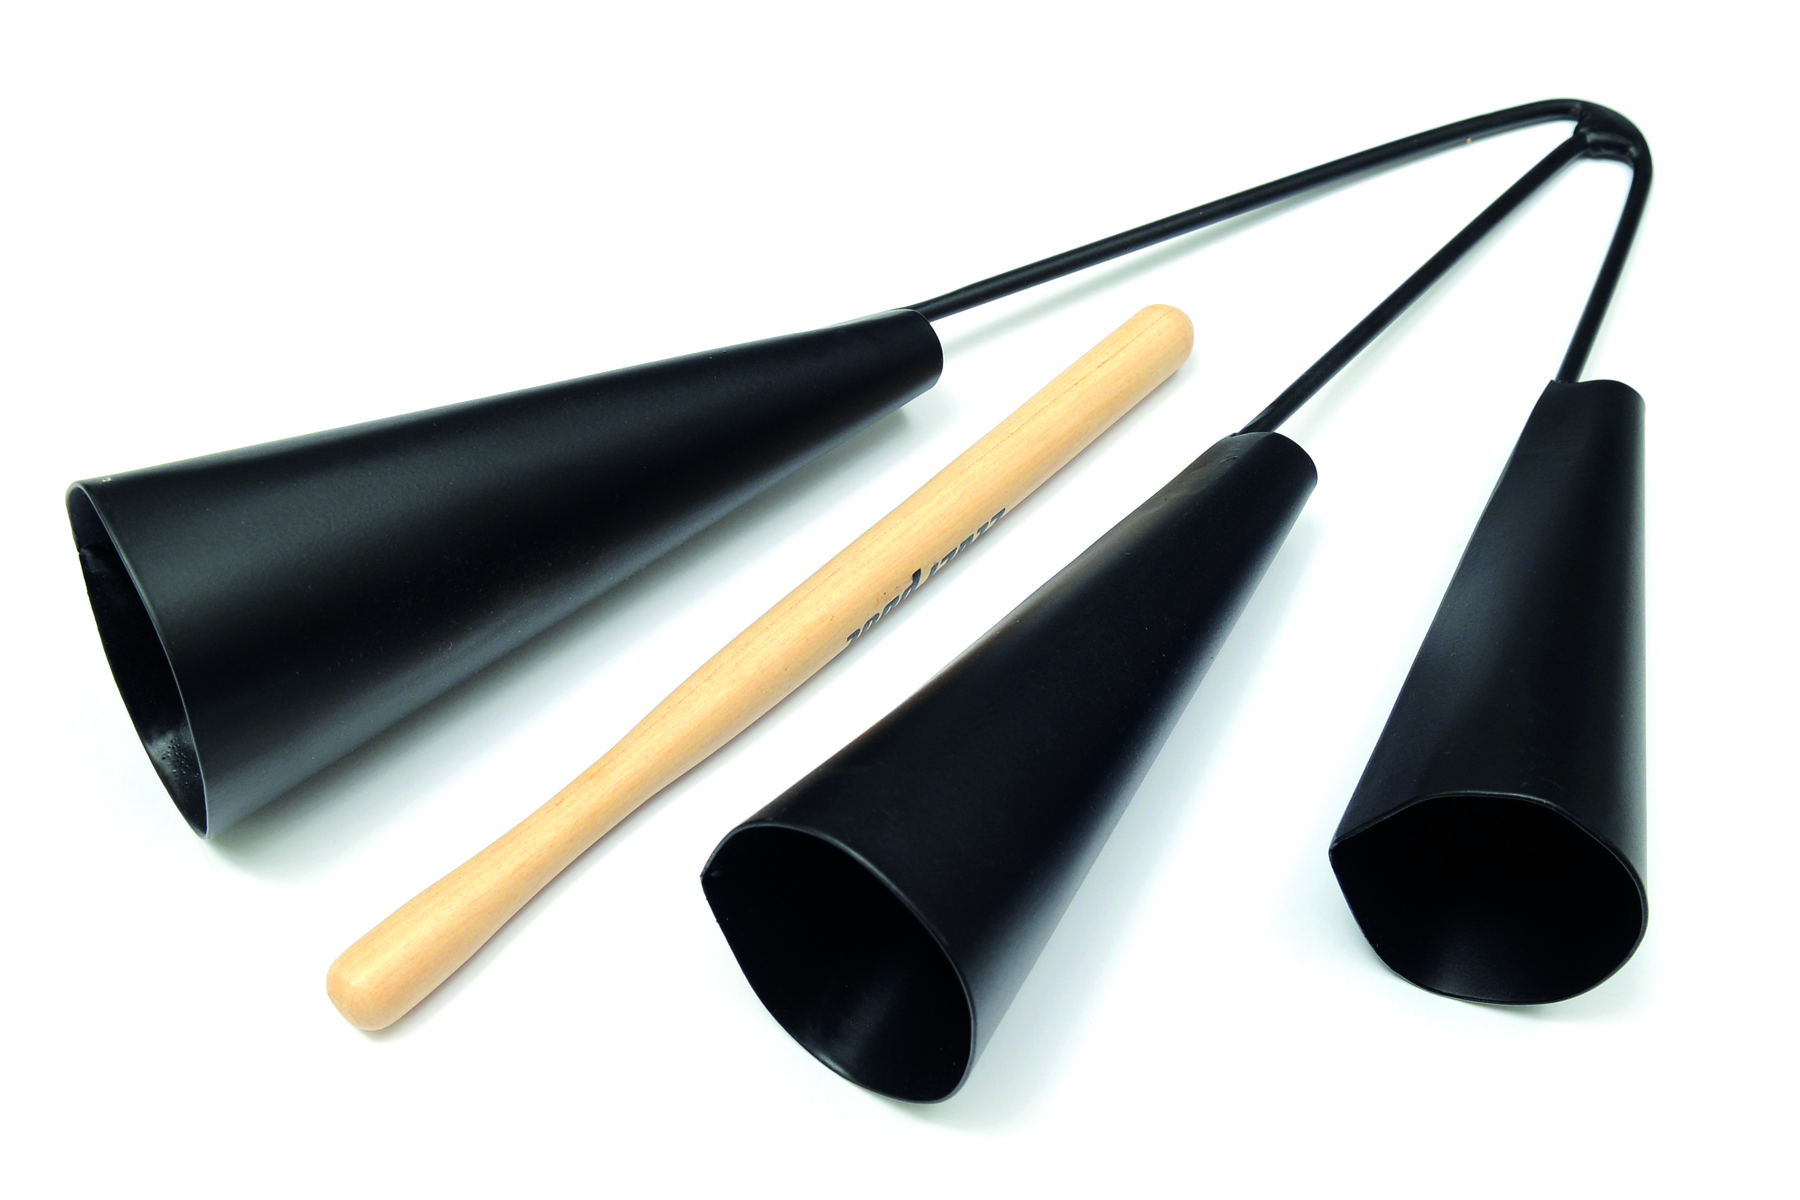 Fotografia. Agogô, instrumento musical composto de três cones em preto de tamanho médio, conectados entre si e uma baqueta de cor bege.